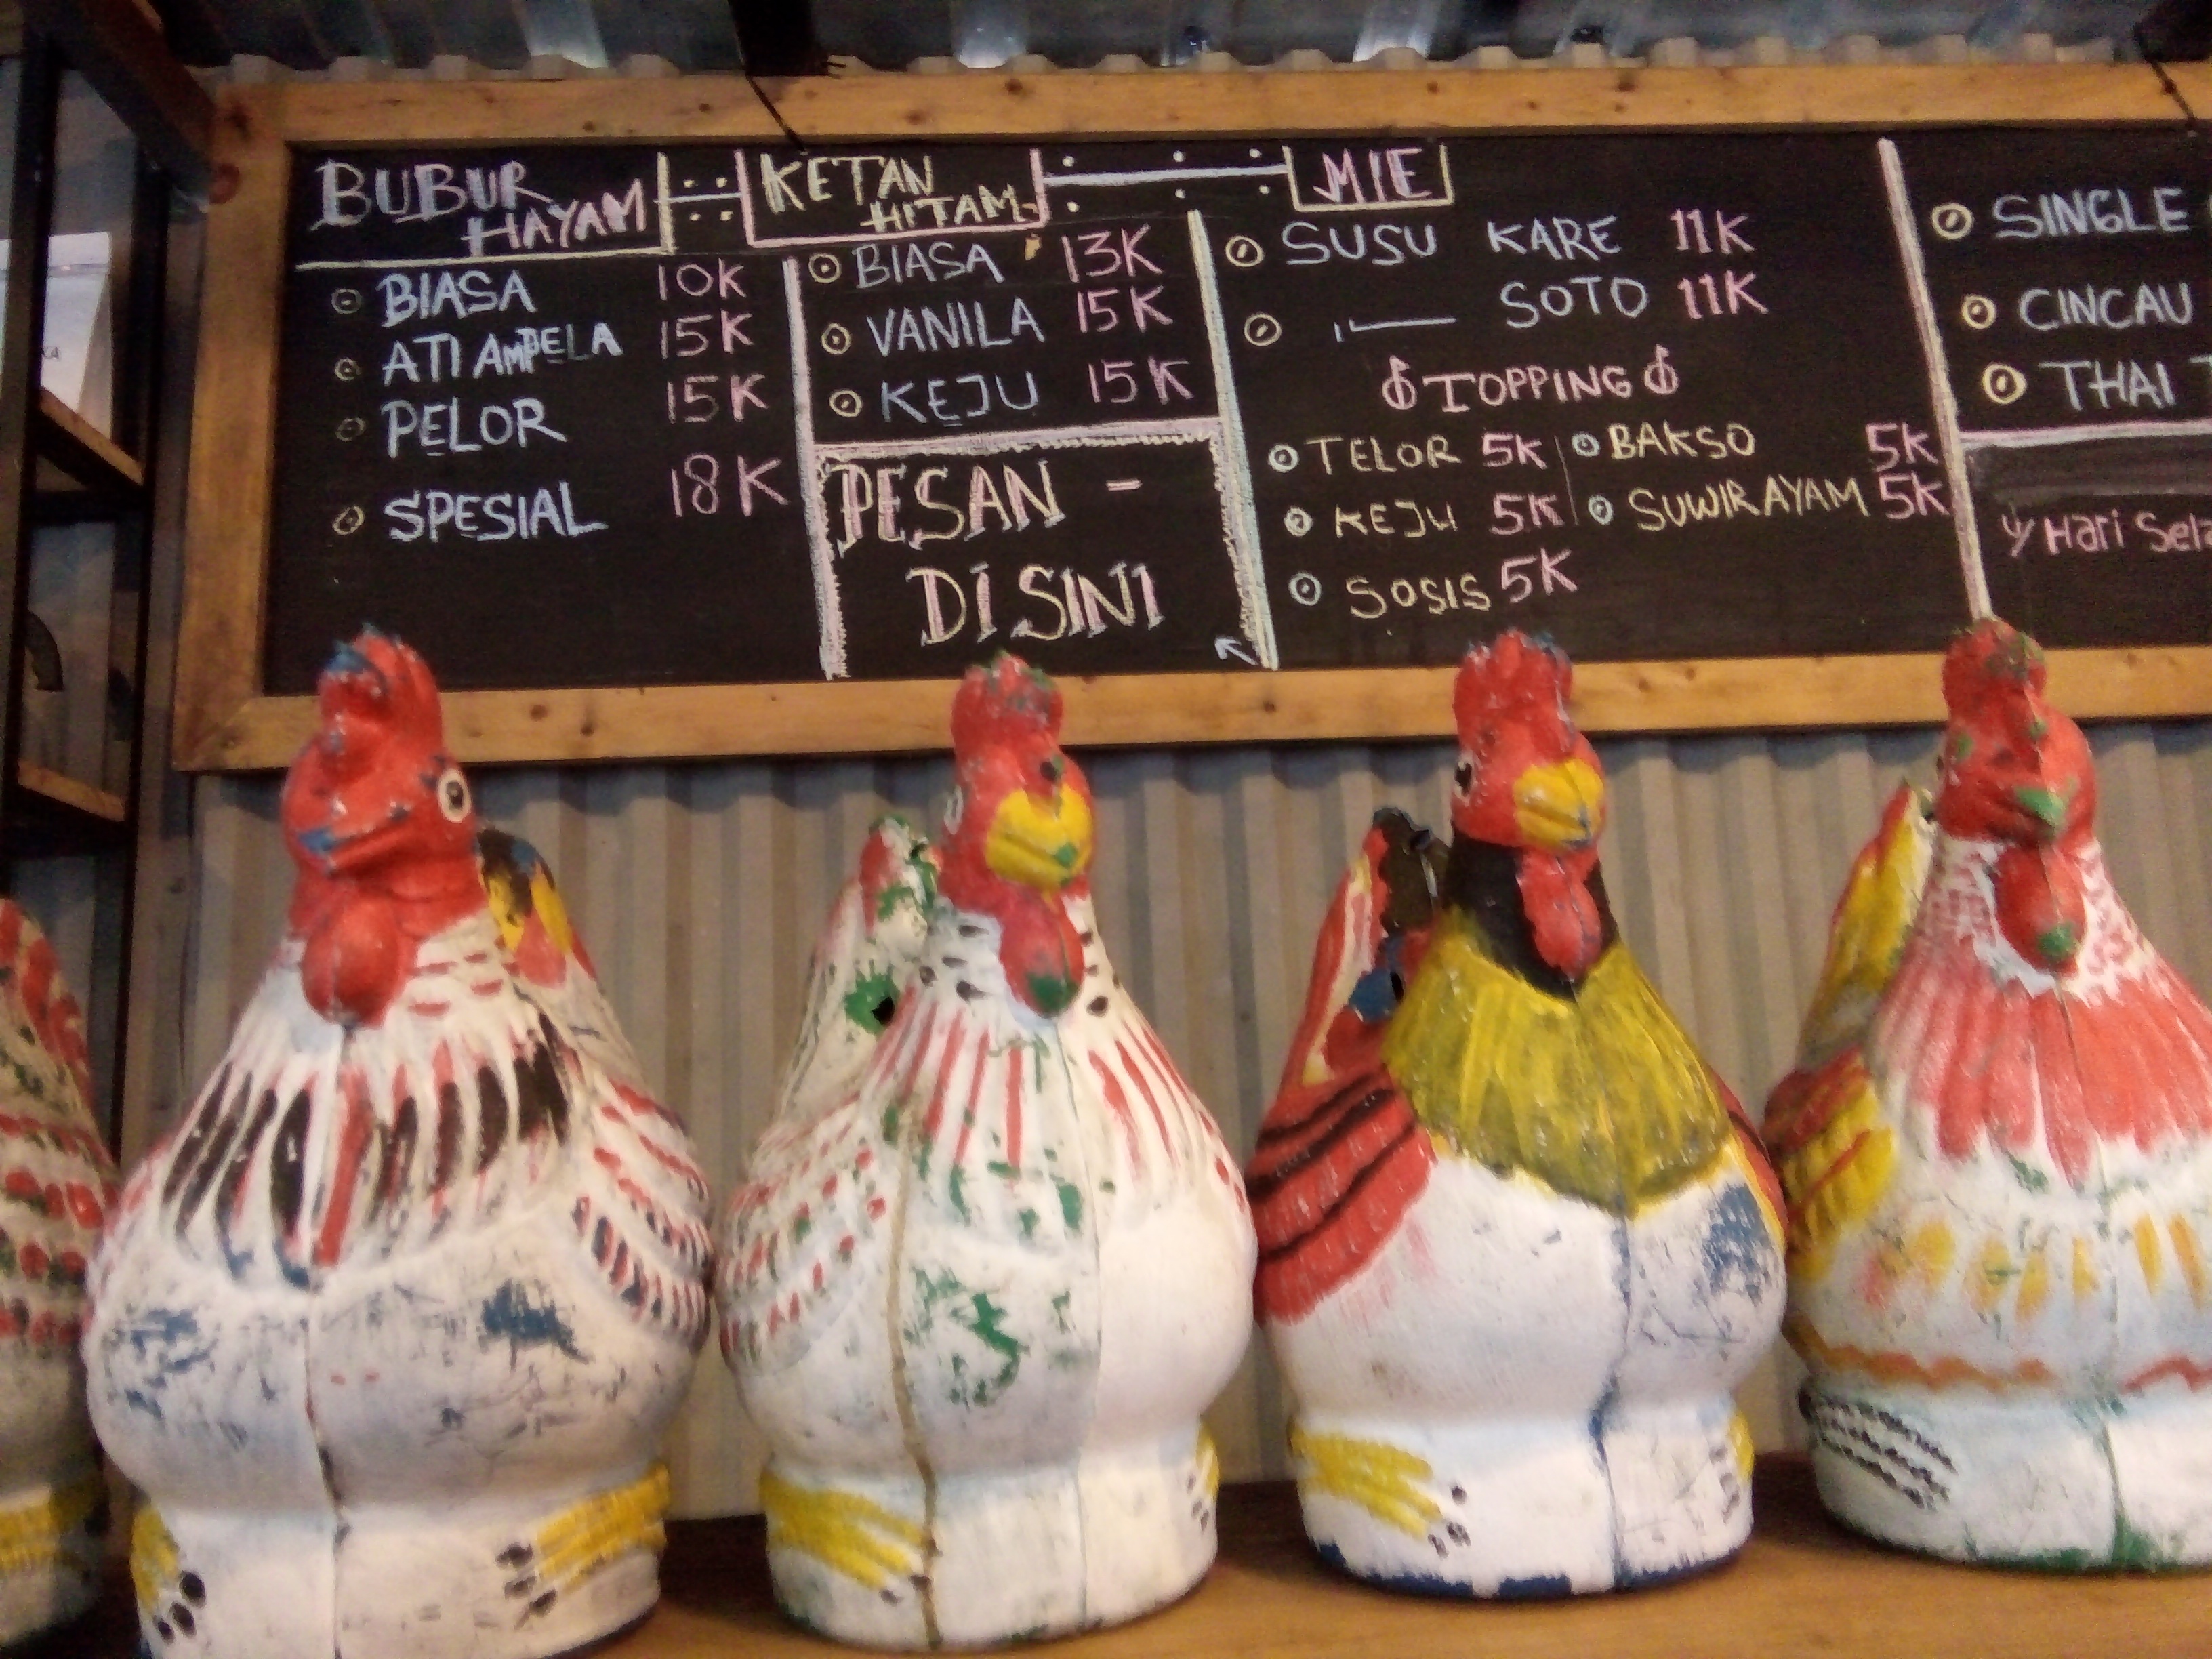 Ayam jago nangkring di Kedai Tekop Surabaya. foto:widikamidi